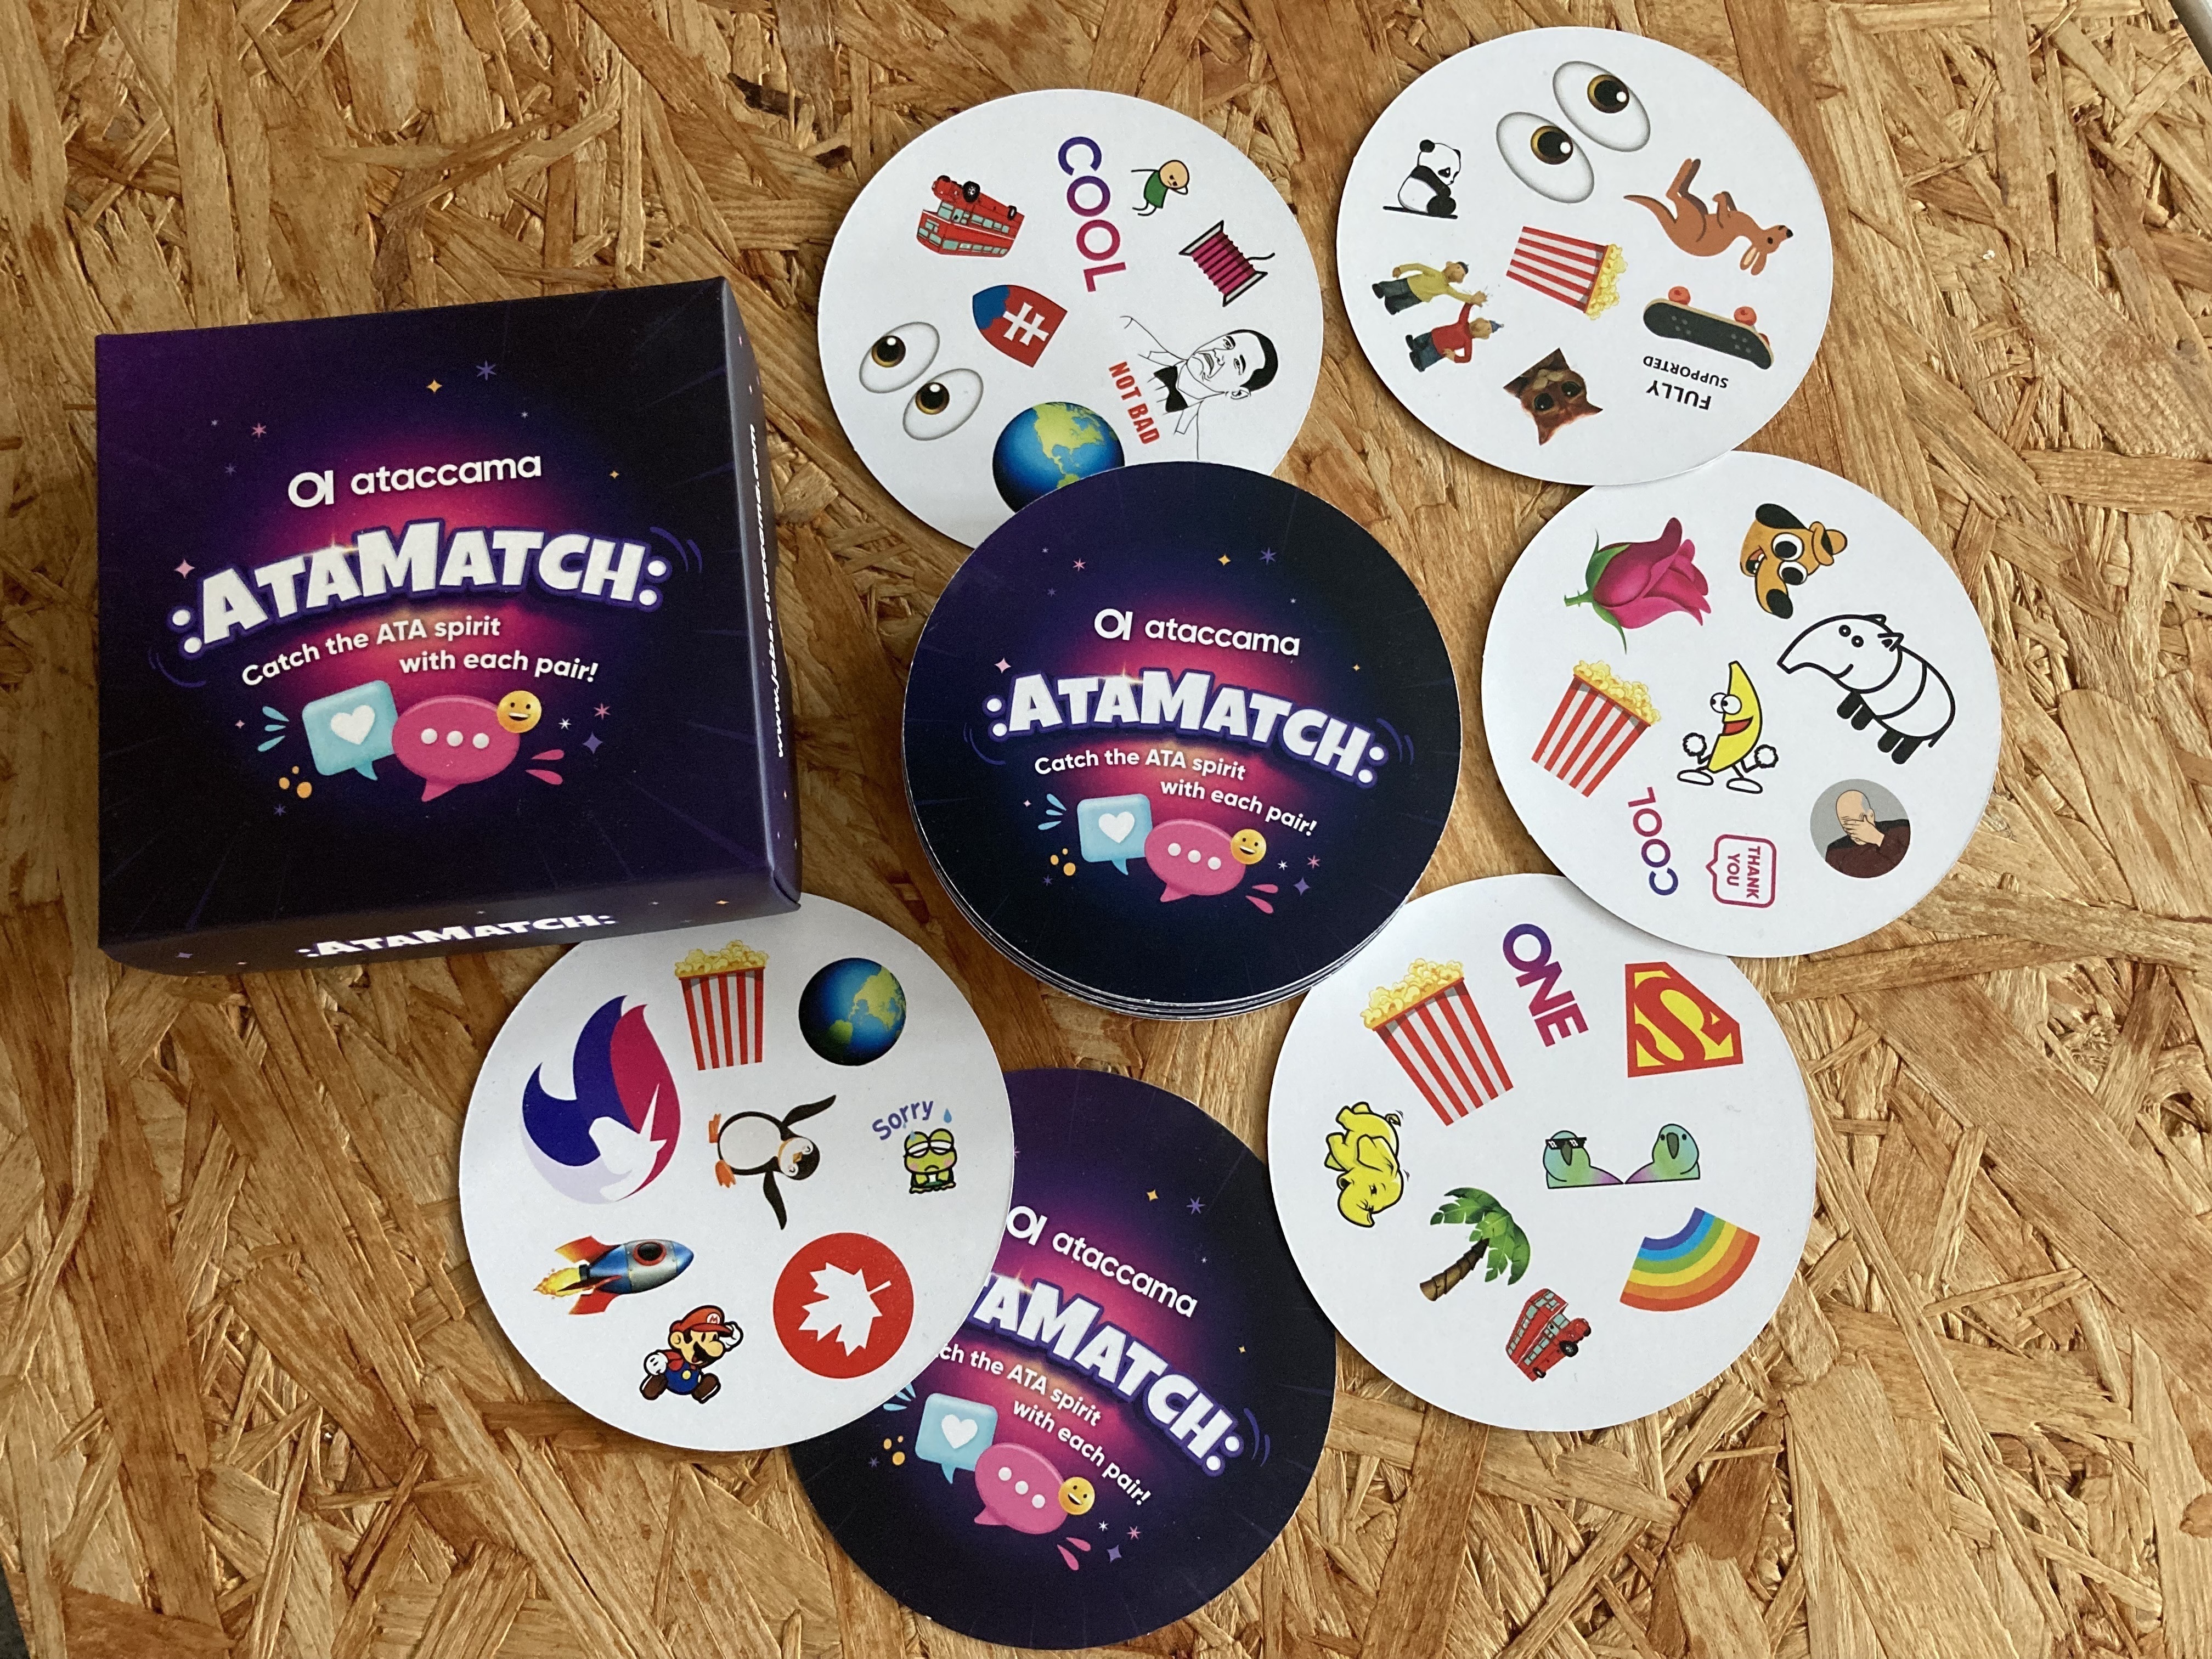 Meet AtaMatch, the Ataccama card game!